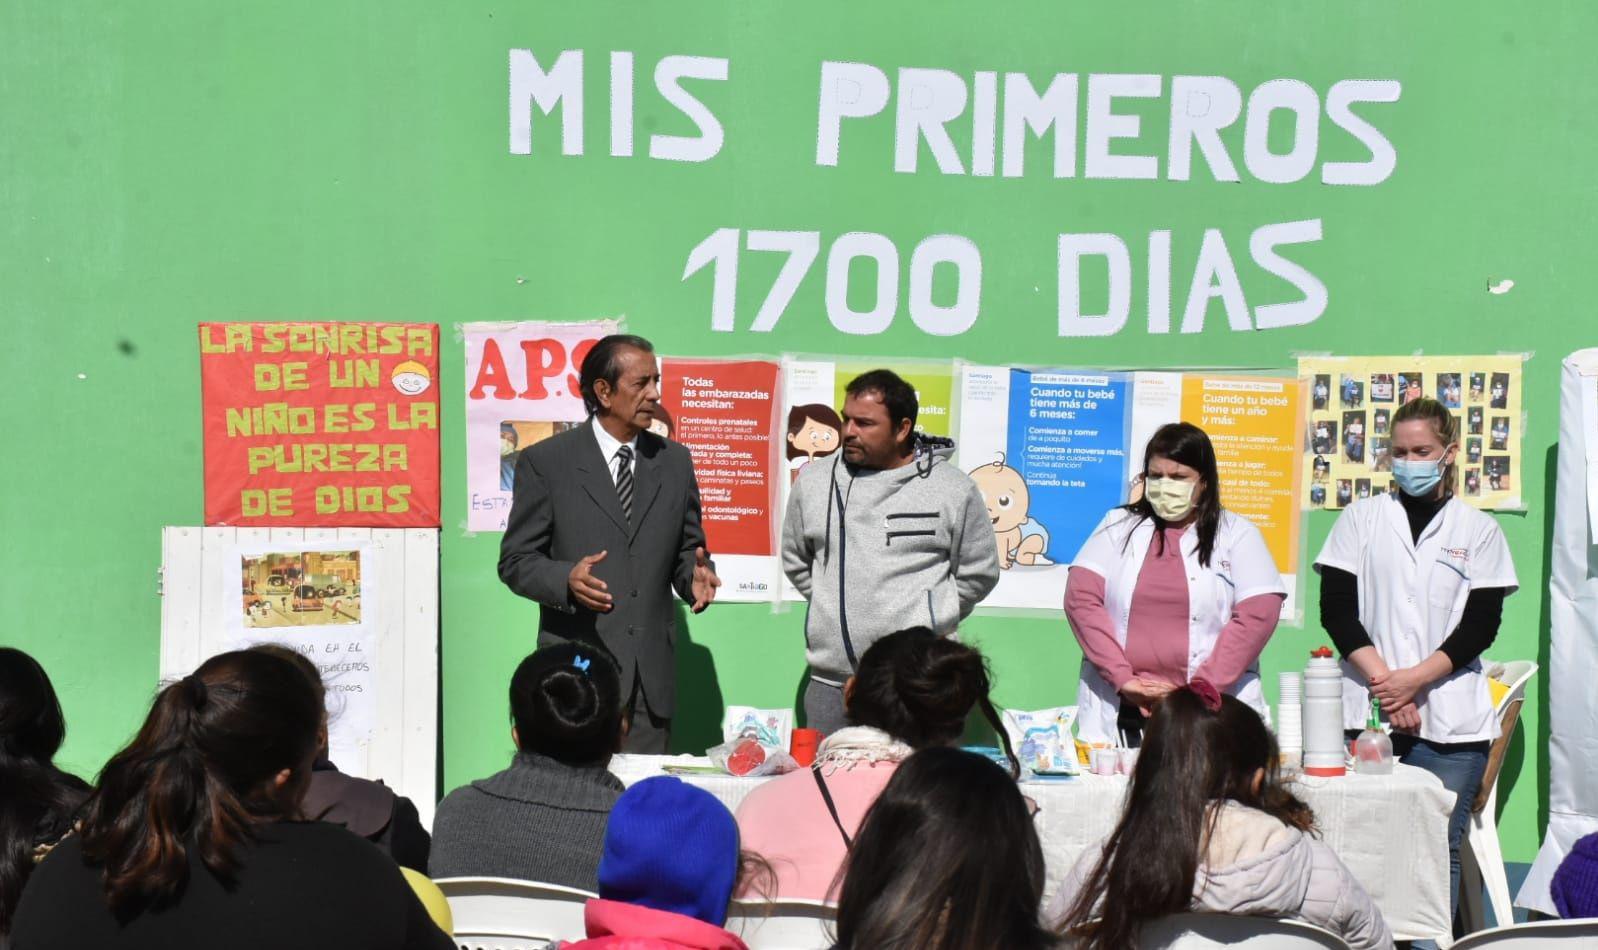 El programa Mis Primeros 1700 diacuteas llegoacute a la localidad de La Nena